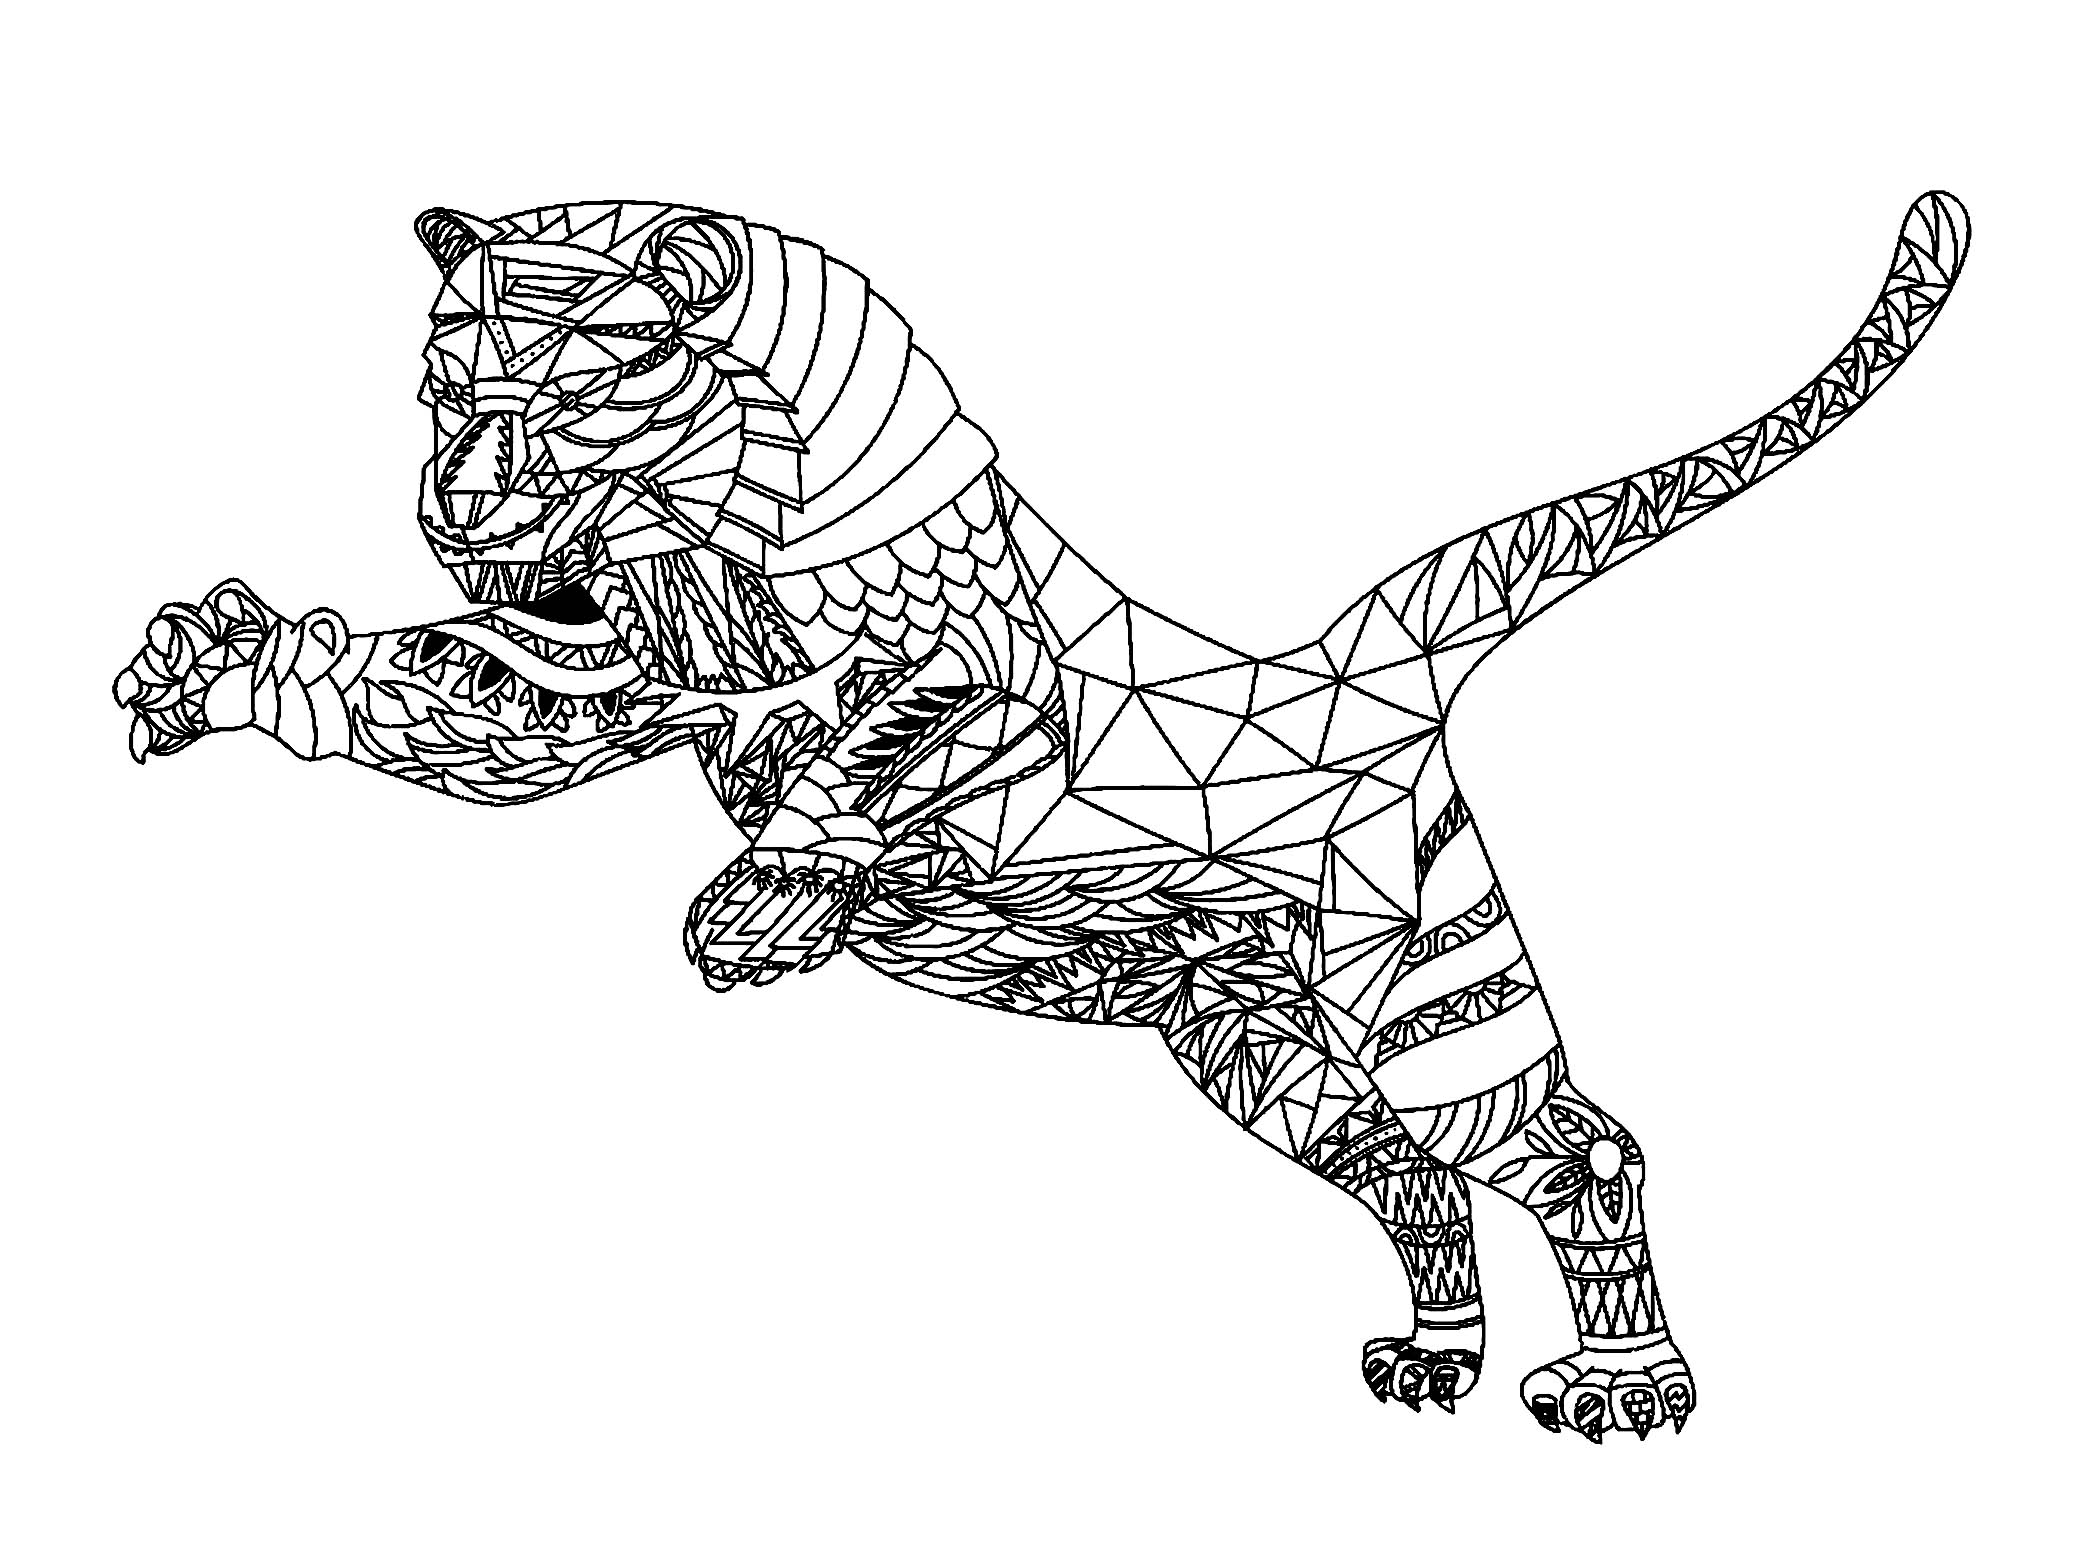 Colorear para adultos  : Tigres - 1, Artista : Mikhail Mikhnevich   Origen : 123rf